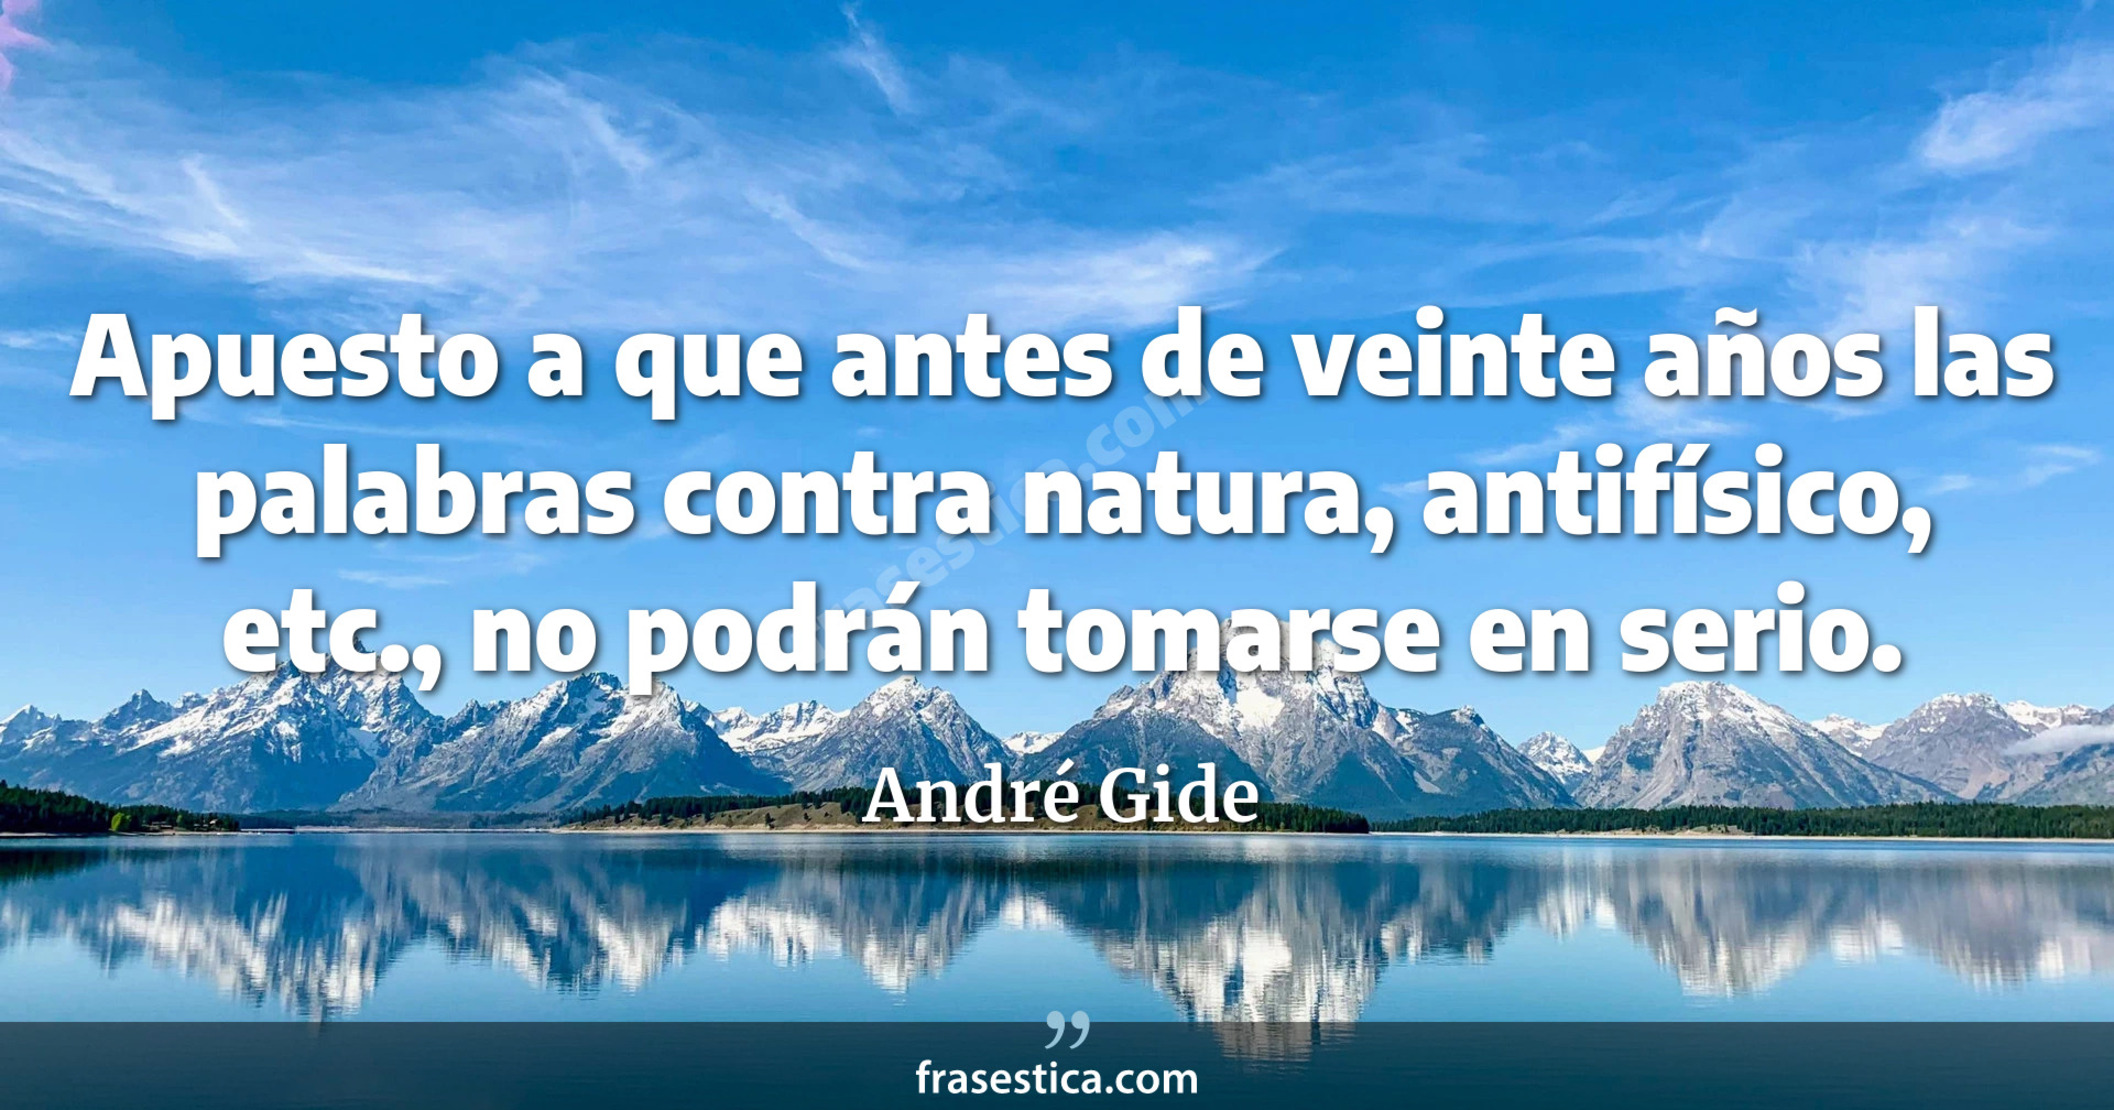 Apuesto a que antes de veinte años las palabras contra natura, antifísico, etc., no podrán tomarse en serio. - André Gide